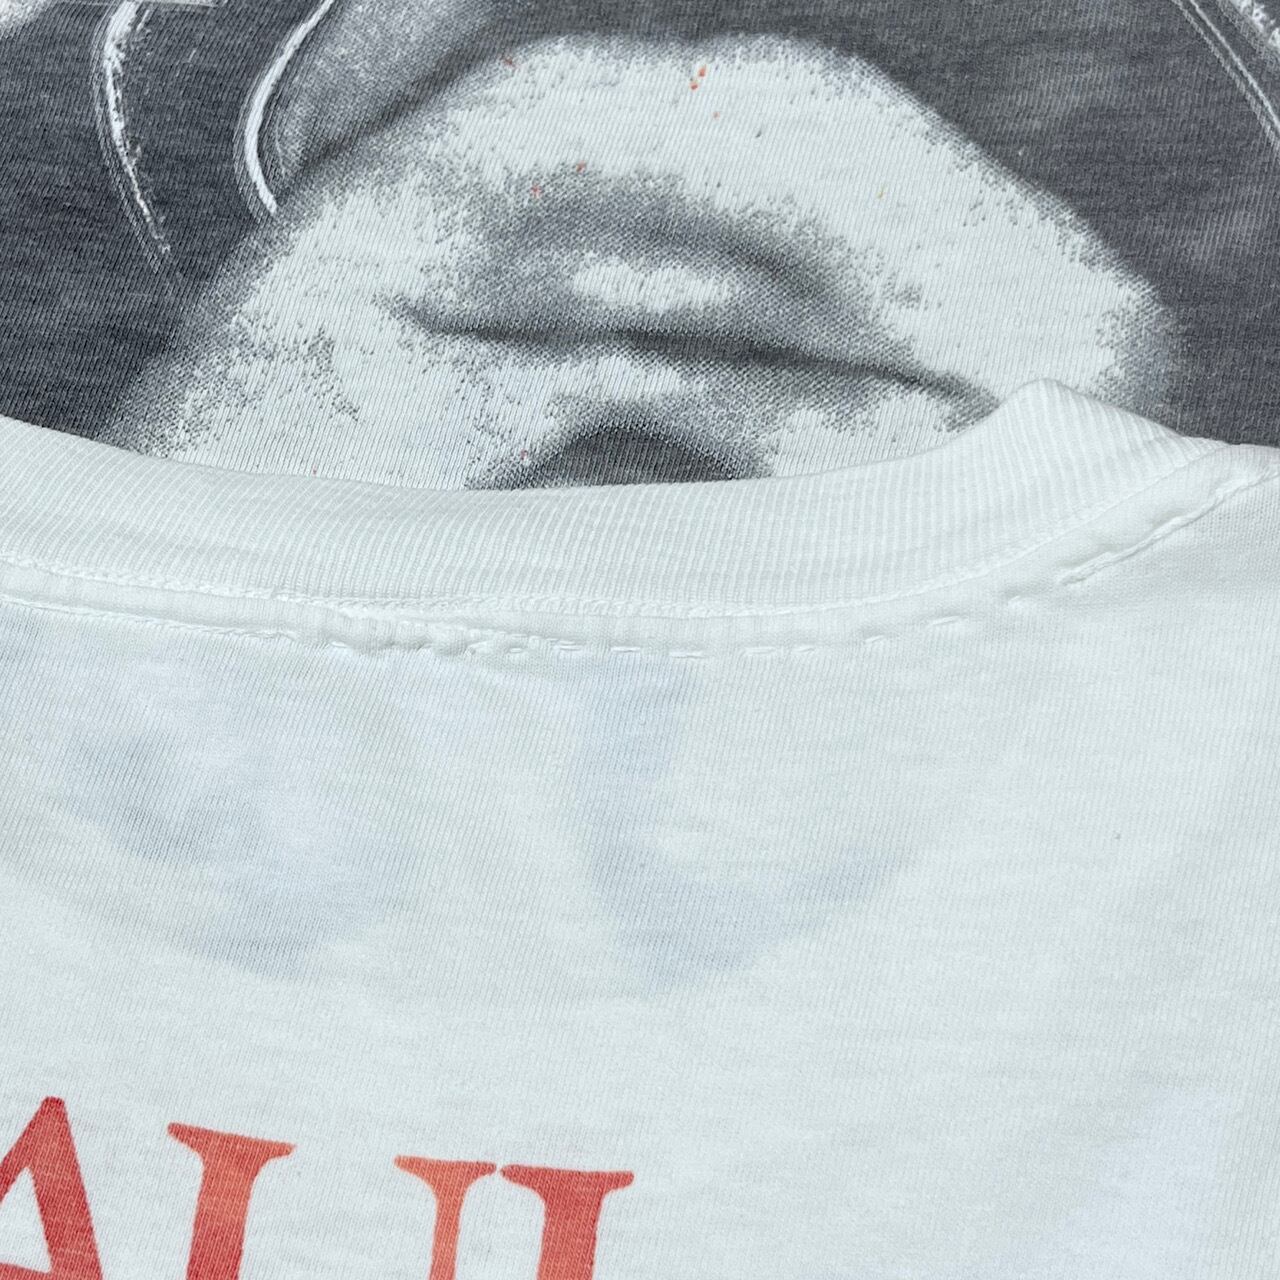 ポール・マッカートニー 89-90ワールドツアー Tシャツ M 色落ち無し